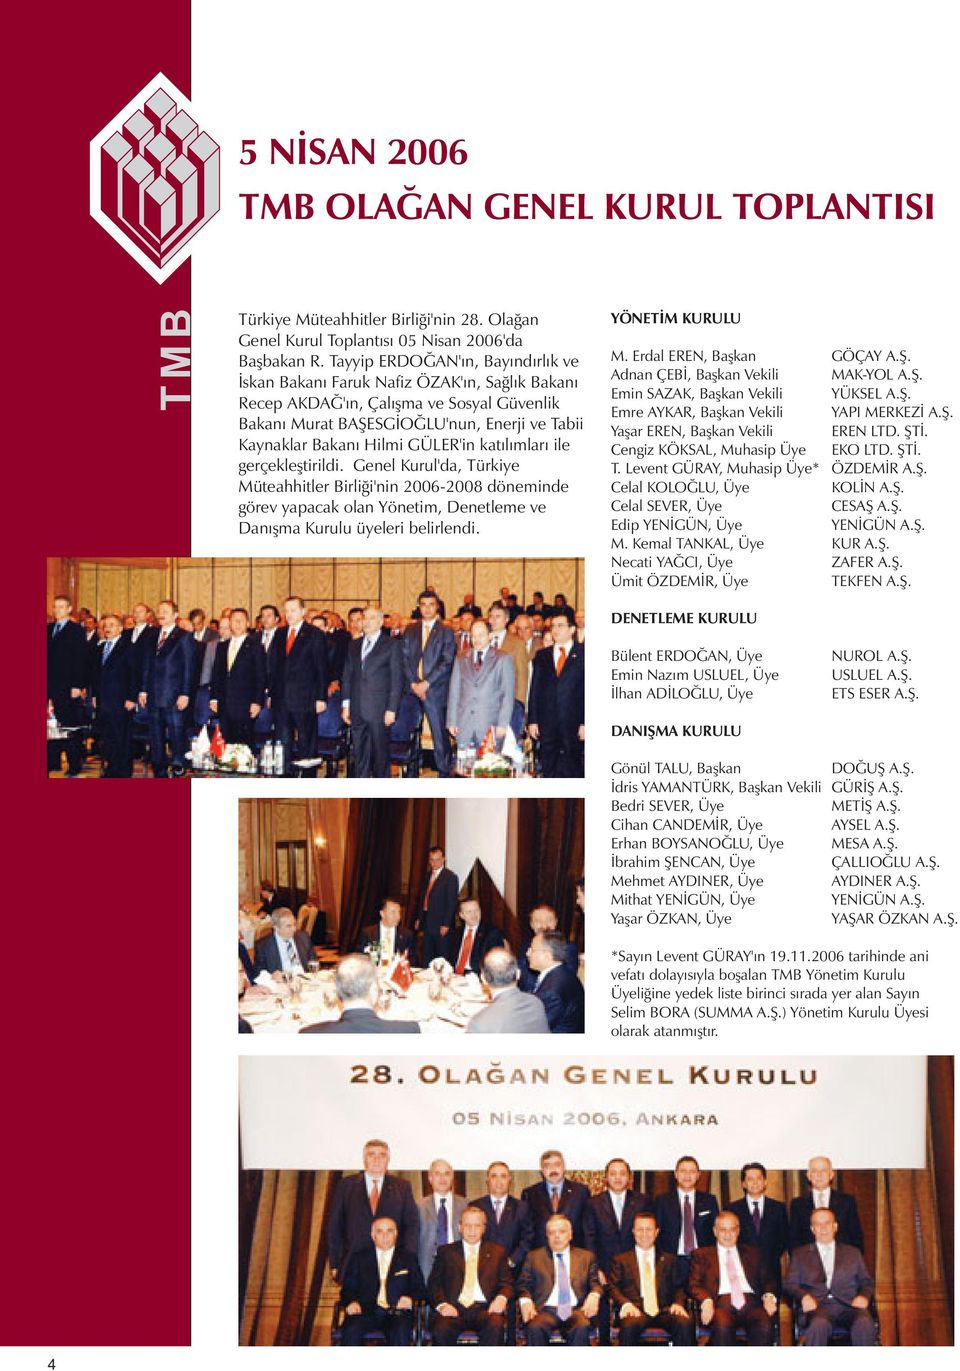 GÜLER'in katılımları ile gerçekleştirildi. Genel Kurul'da, Türkiye Müteahhitler Birliği'nin 2006-2008 döneminde görev yapacak olan Yönetim, Denetleme ve Danışma Kurulu üyeleri belirlendi.